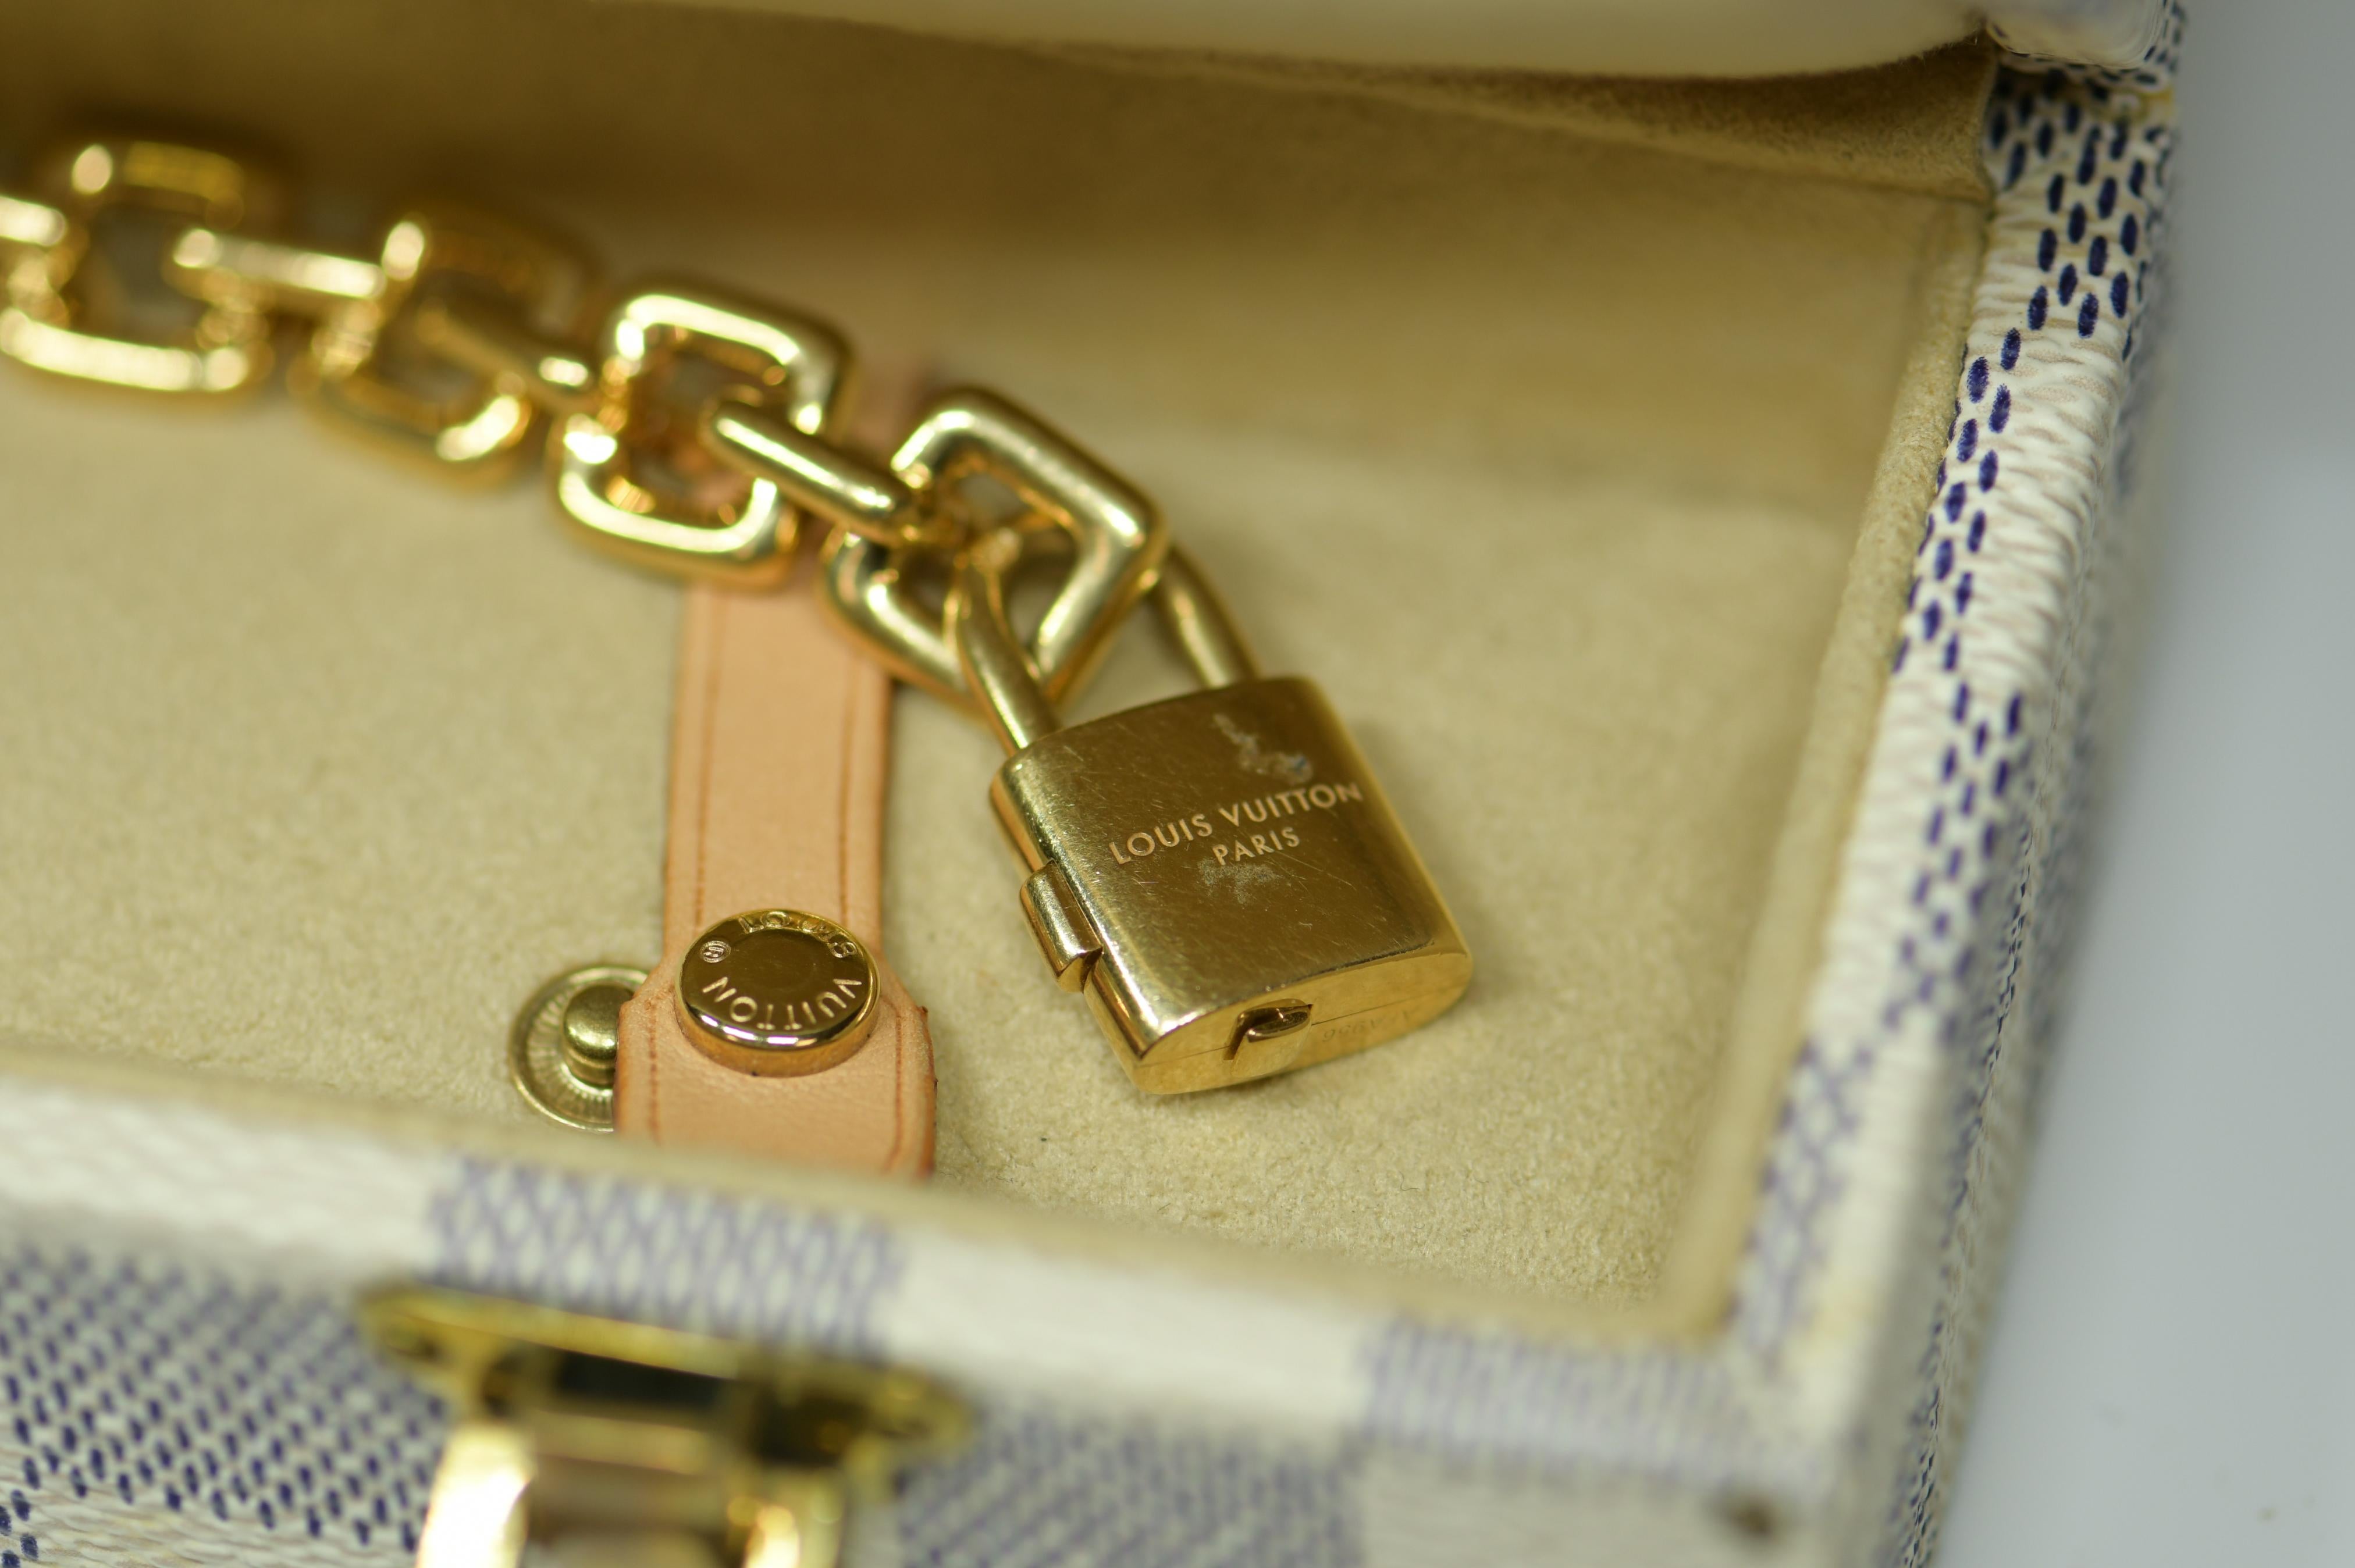 Square Cut Louis Vuitton Vintage 18 Karat Gold Charm Bracelet with Original Case